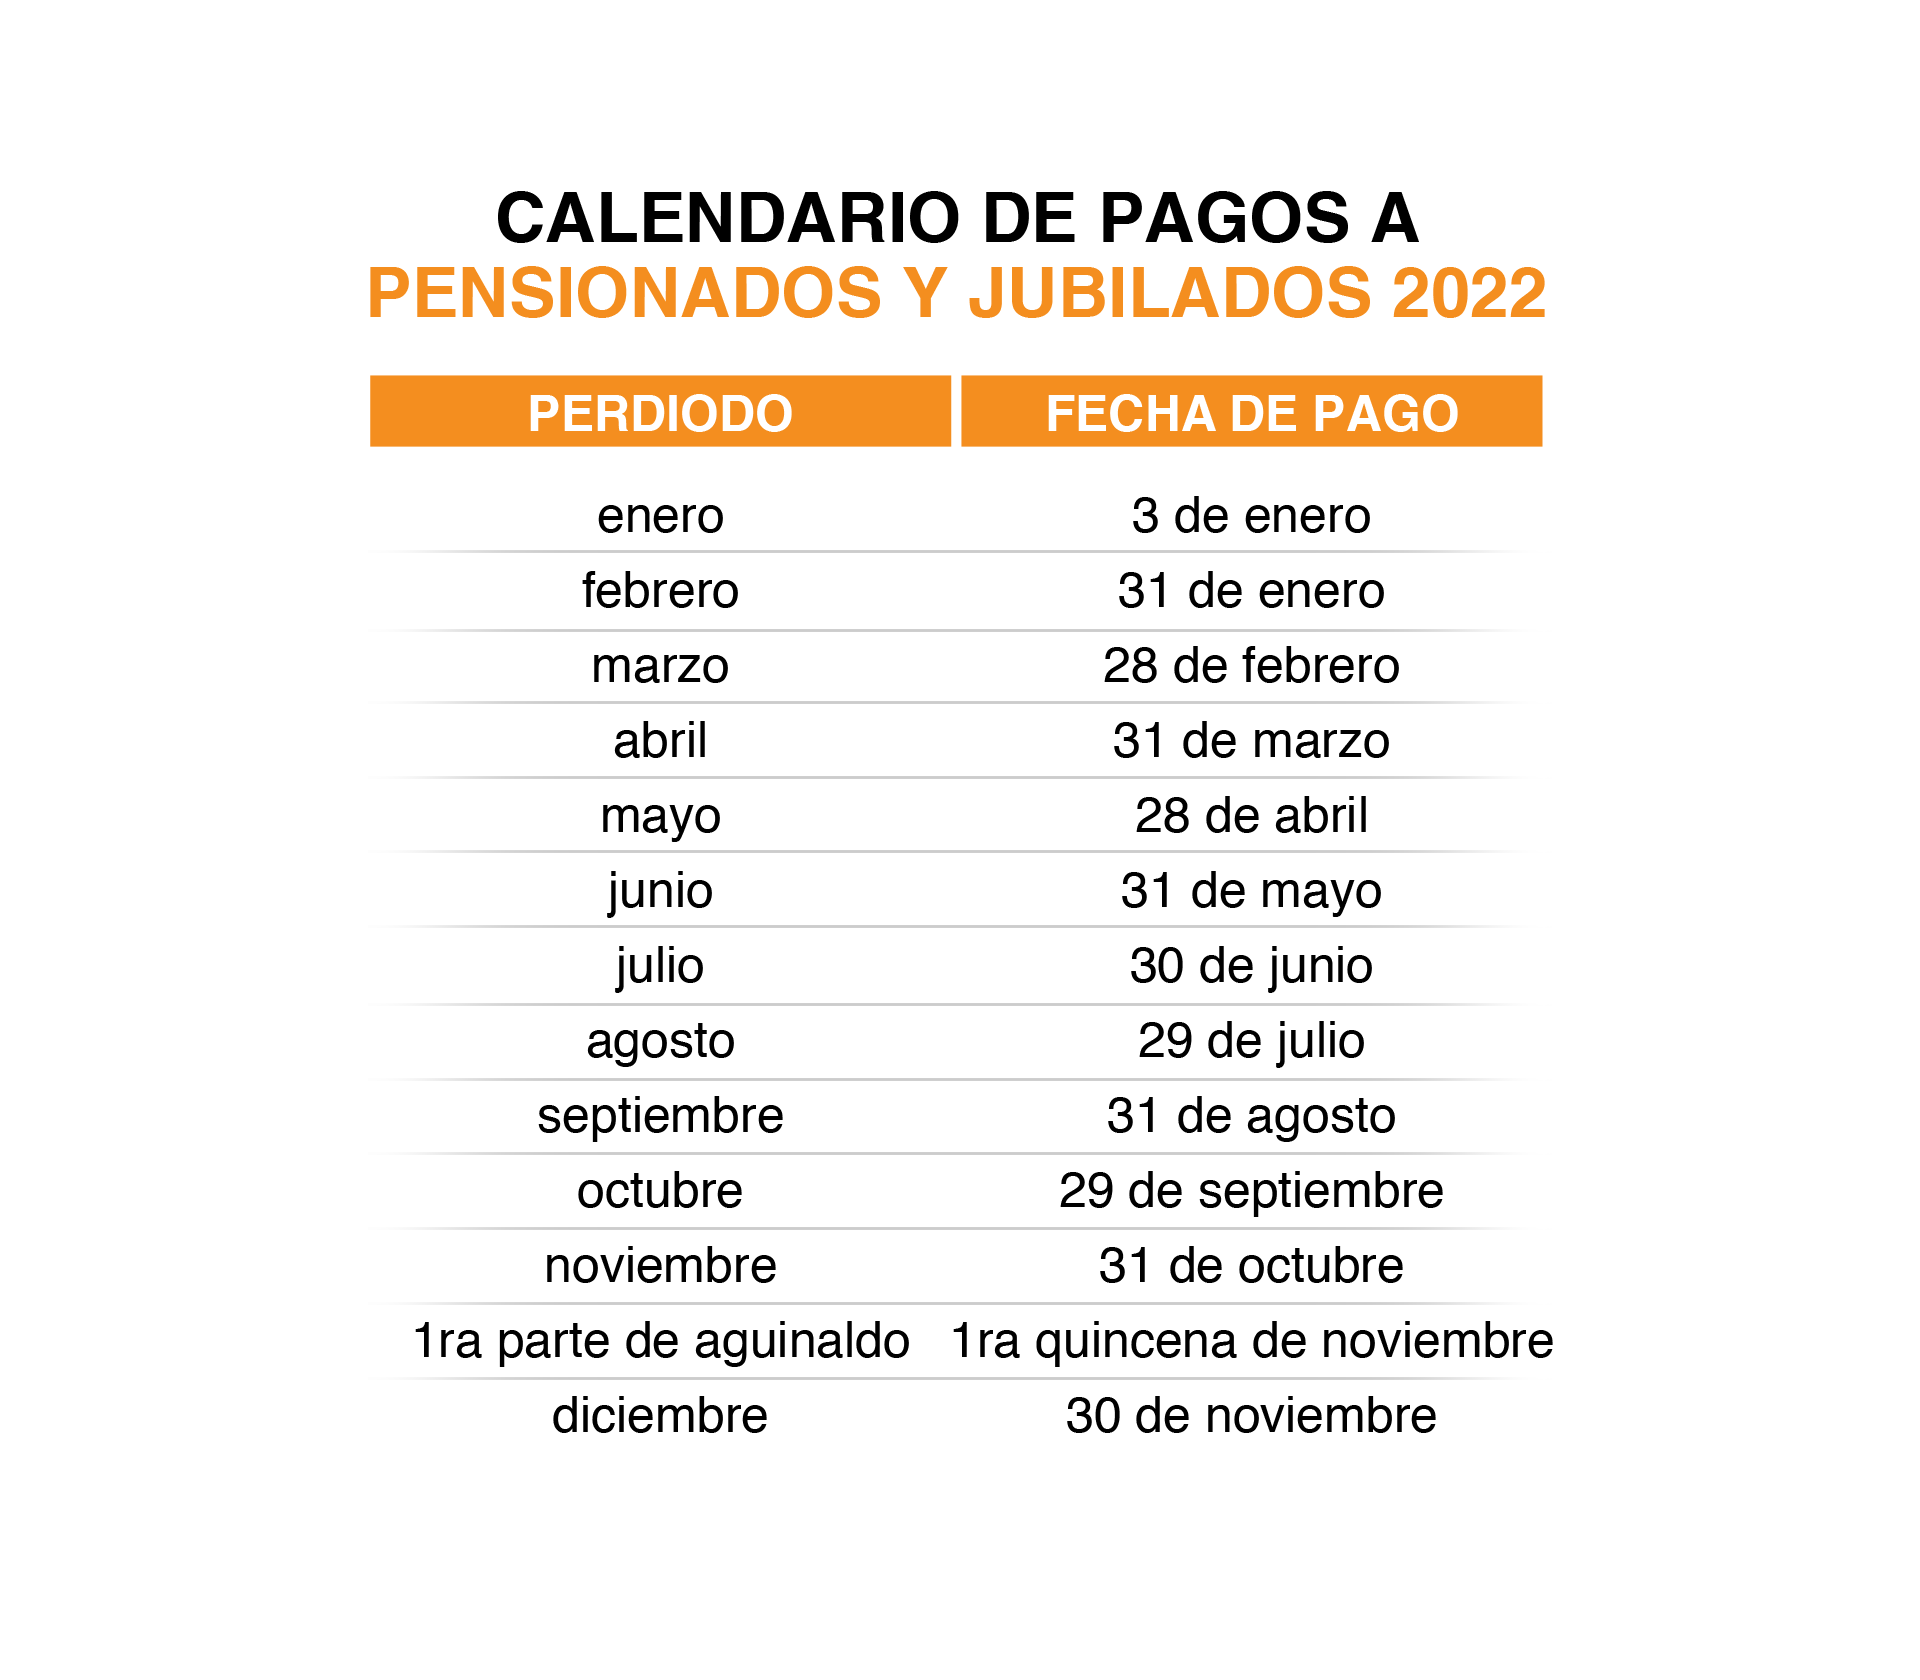 Calendario oficial del ISSSTE 2022. Infobae